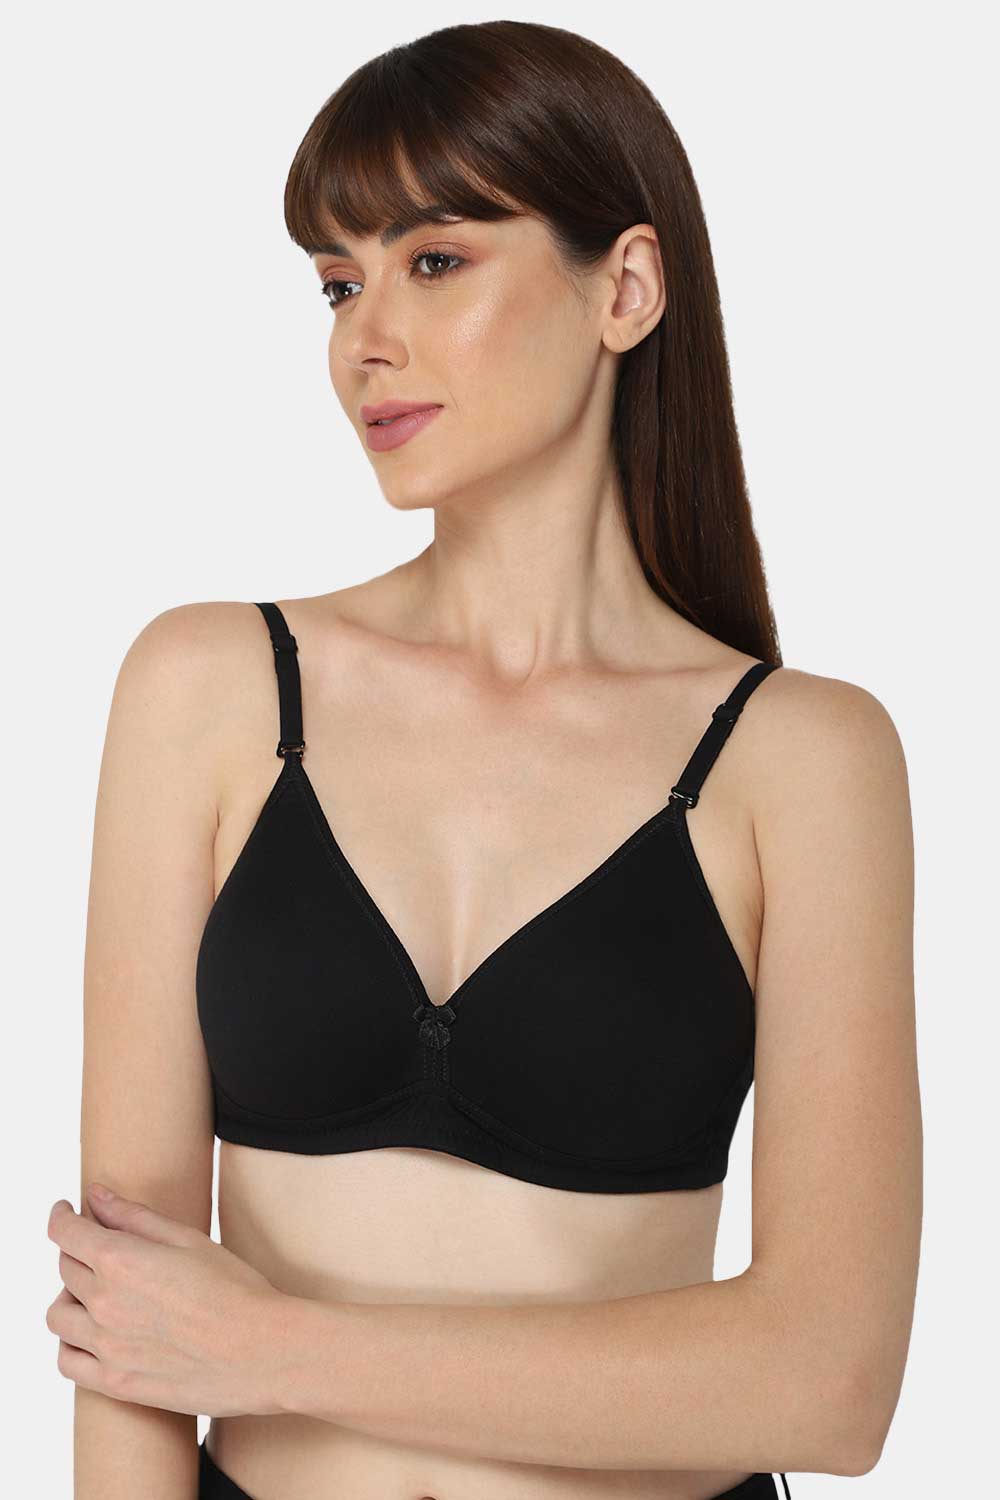 Buy online Detachable Strap Backless Bra from lingerie for Women